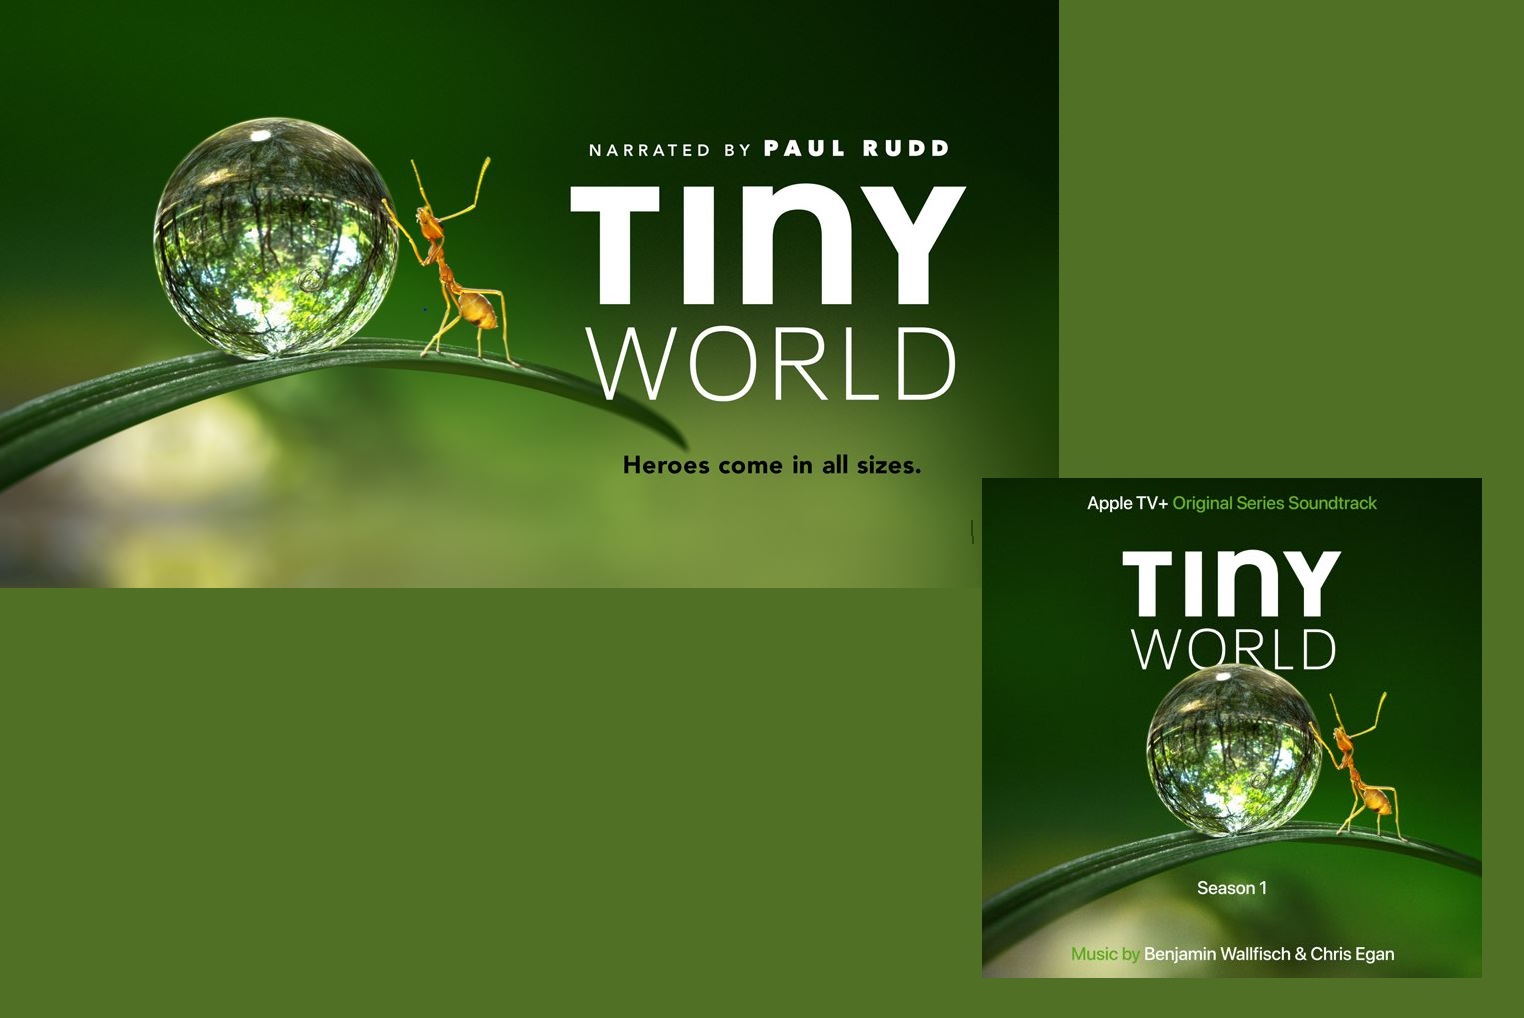 Tiny World (Documentary)